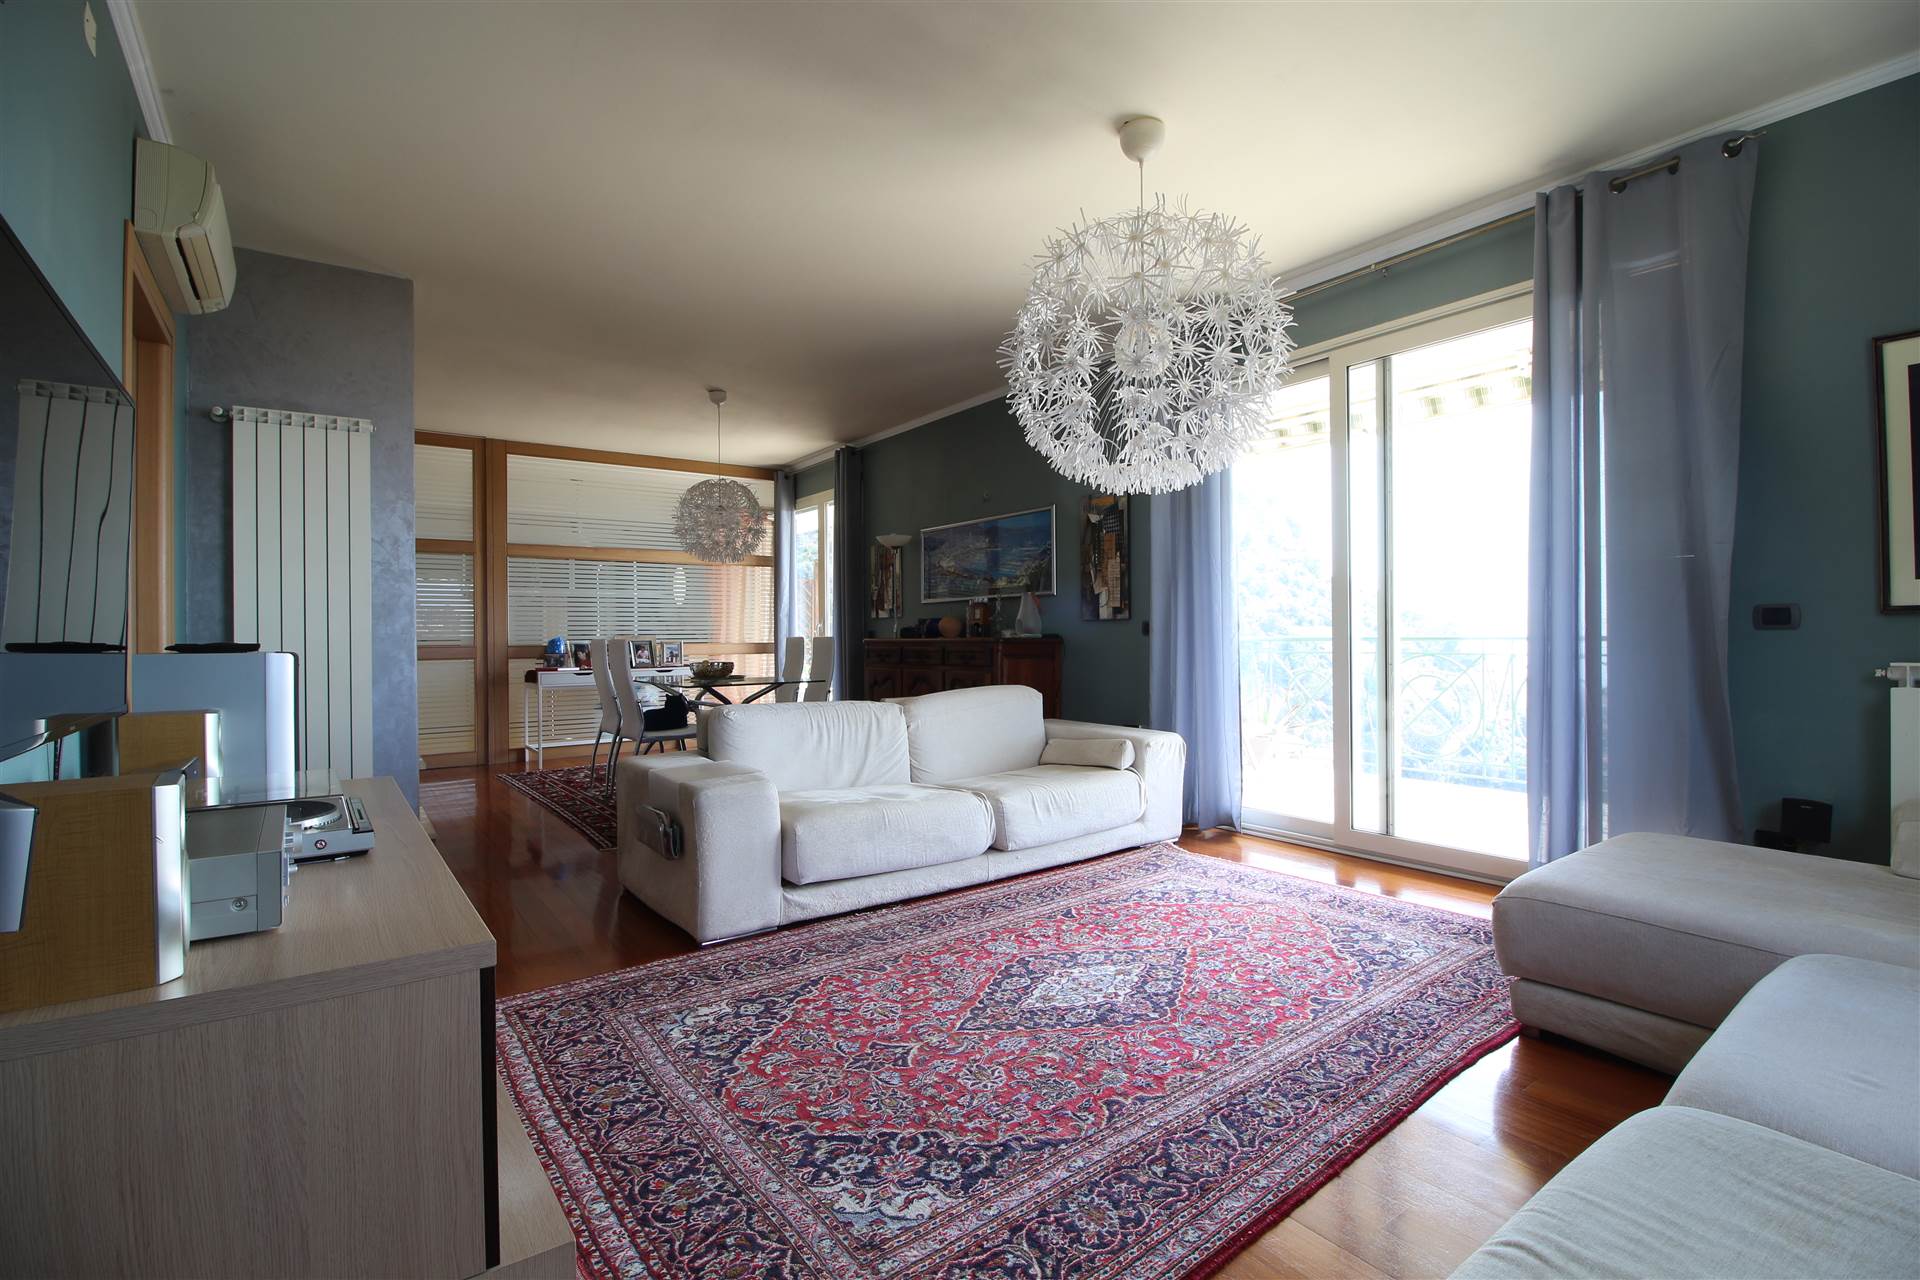 Stai cercando un appartamento di prestigio in vendita a Ventimiglia? Abbiamo la soluzione perfetta per te! Questo splendido appartamento di 117 mq si 